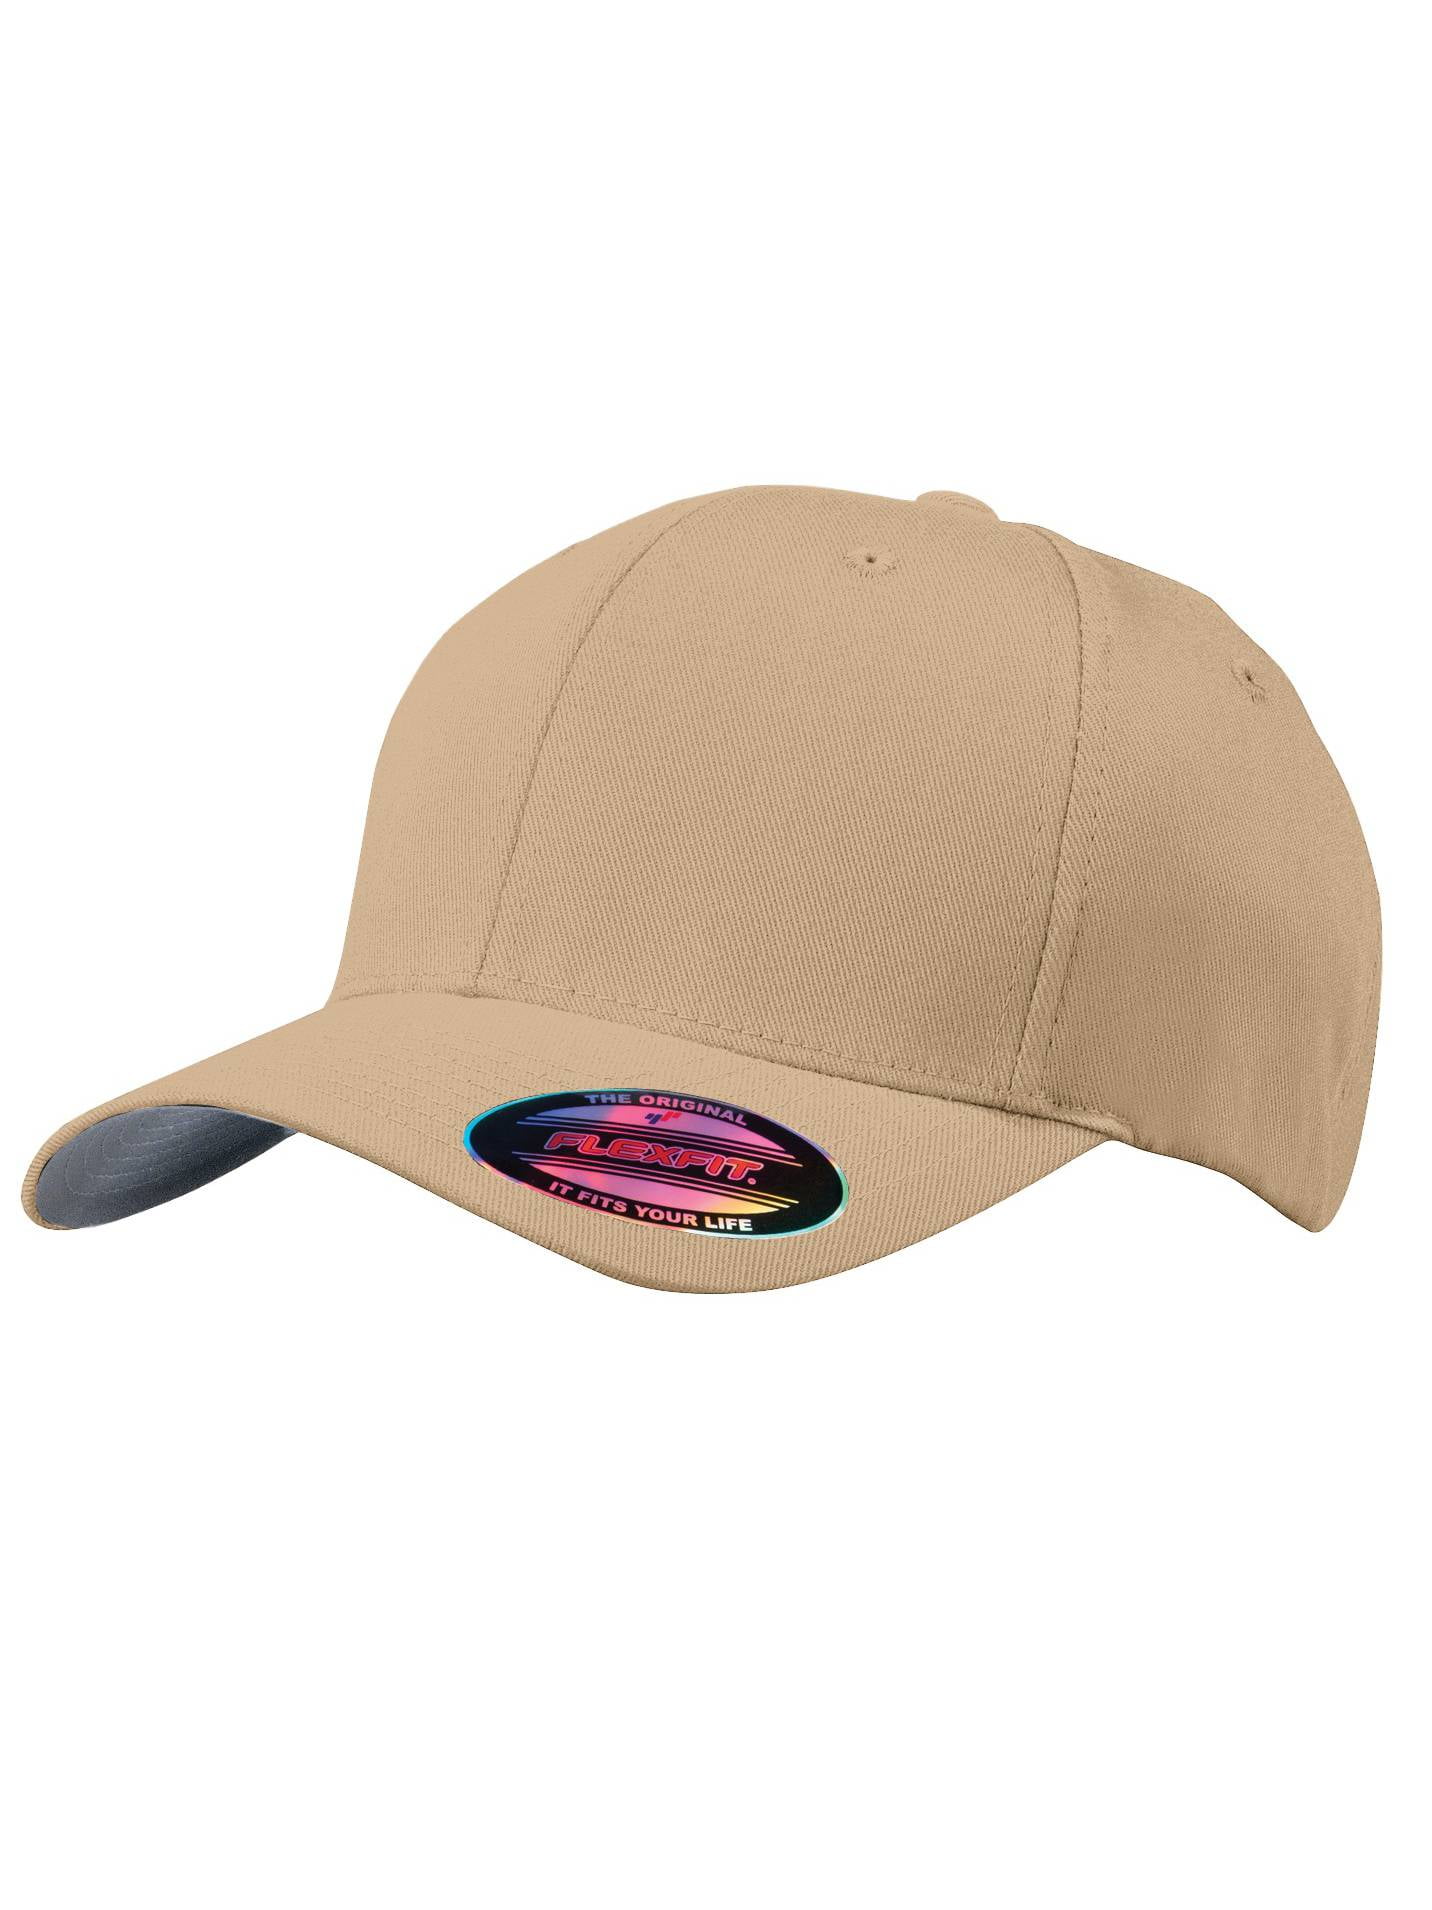 Olive Headwear Top Drab/Green Flex Cap Fit Small/Medium - - Baseball